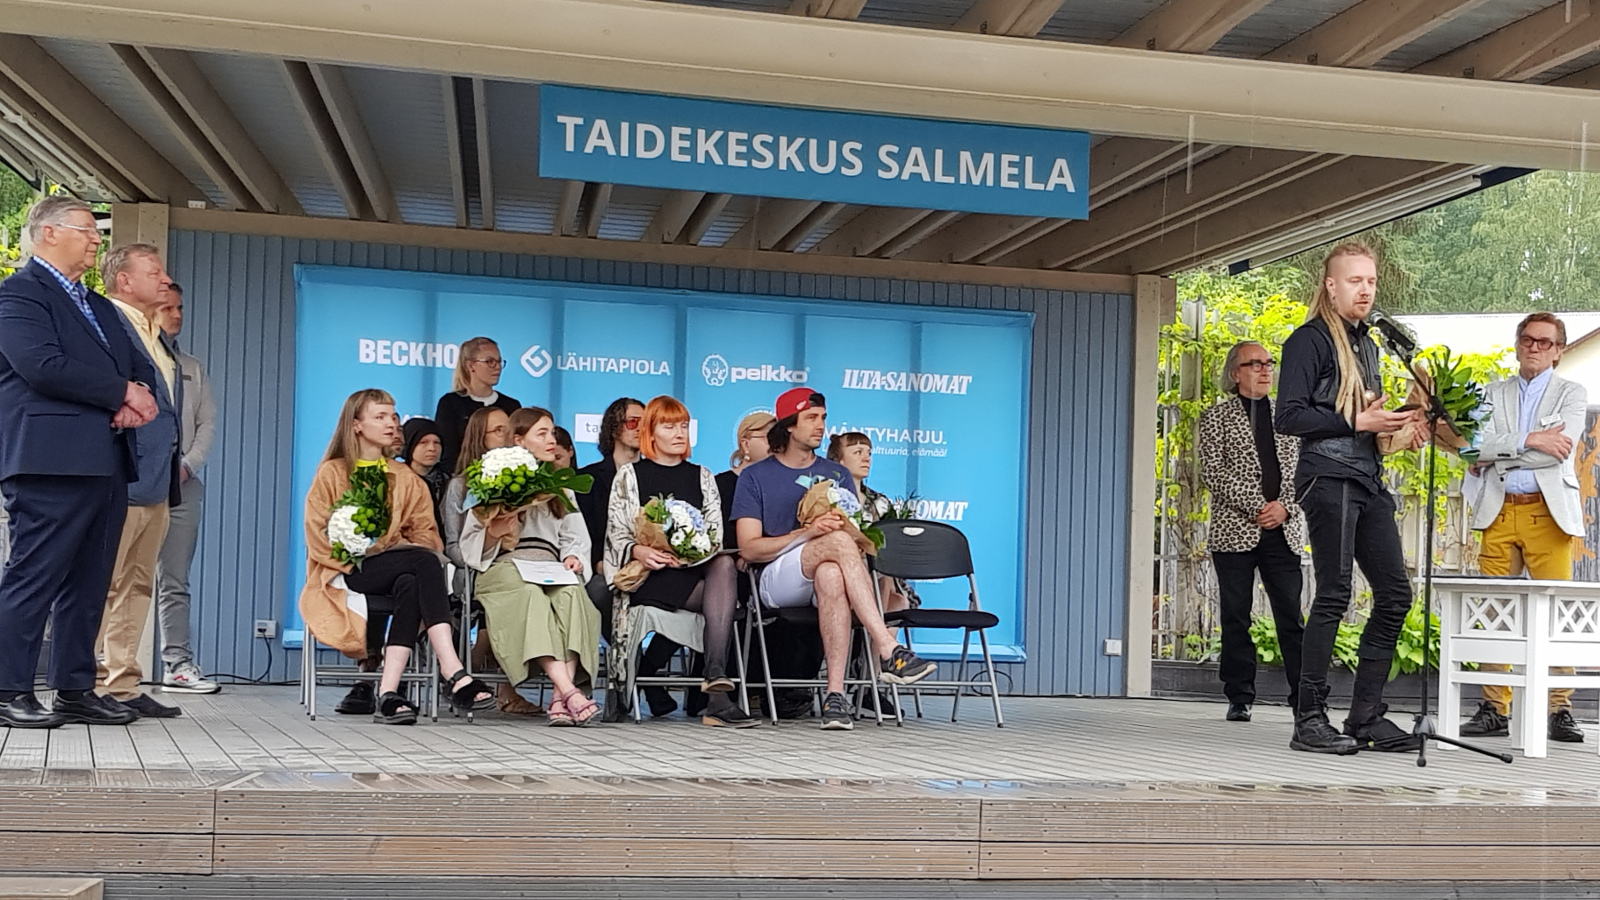 Kuvassa ovat keskellä näyttämöä istumassa nuorten taiteilijoiden näyttelyluokka ja vasemmalla tumman sinisessä puvussa Markku Häkkänen ja Markku Lankinen ja oikealla mikrofonin ääressä puhumassa Sakari Vinko mustissa vaatteissa.  Taustalla Esa Saarinen leopardikuvioisessa takissa ja Tuomas Hoikkala vaaleassa takissa ja keltaisissa housuissa.